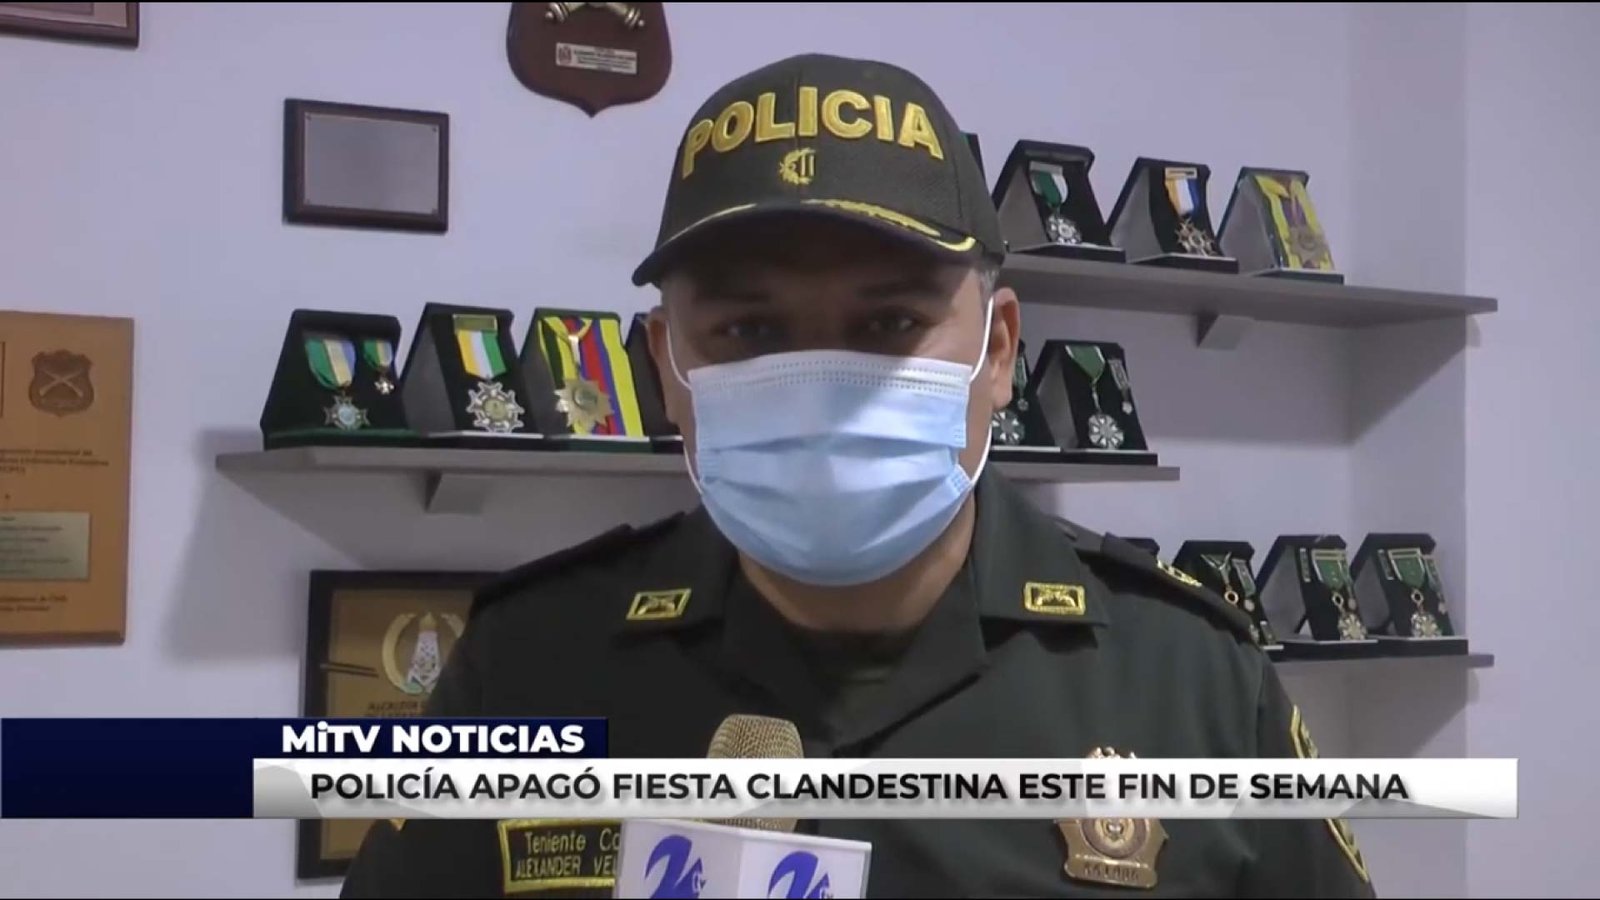 POLICÍA APAGÓ FIESTA CLANDESTINA ESTE FIN DE SEMANA